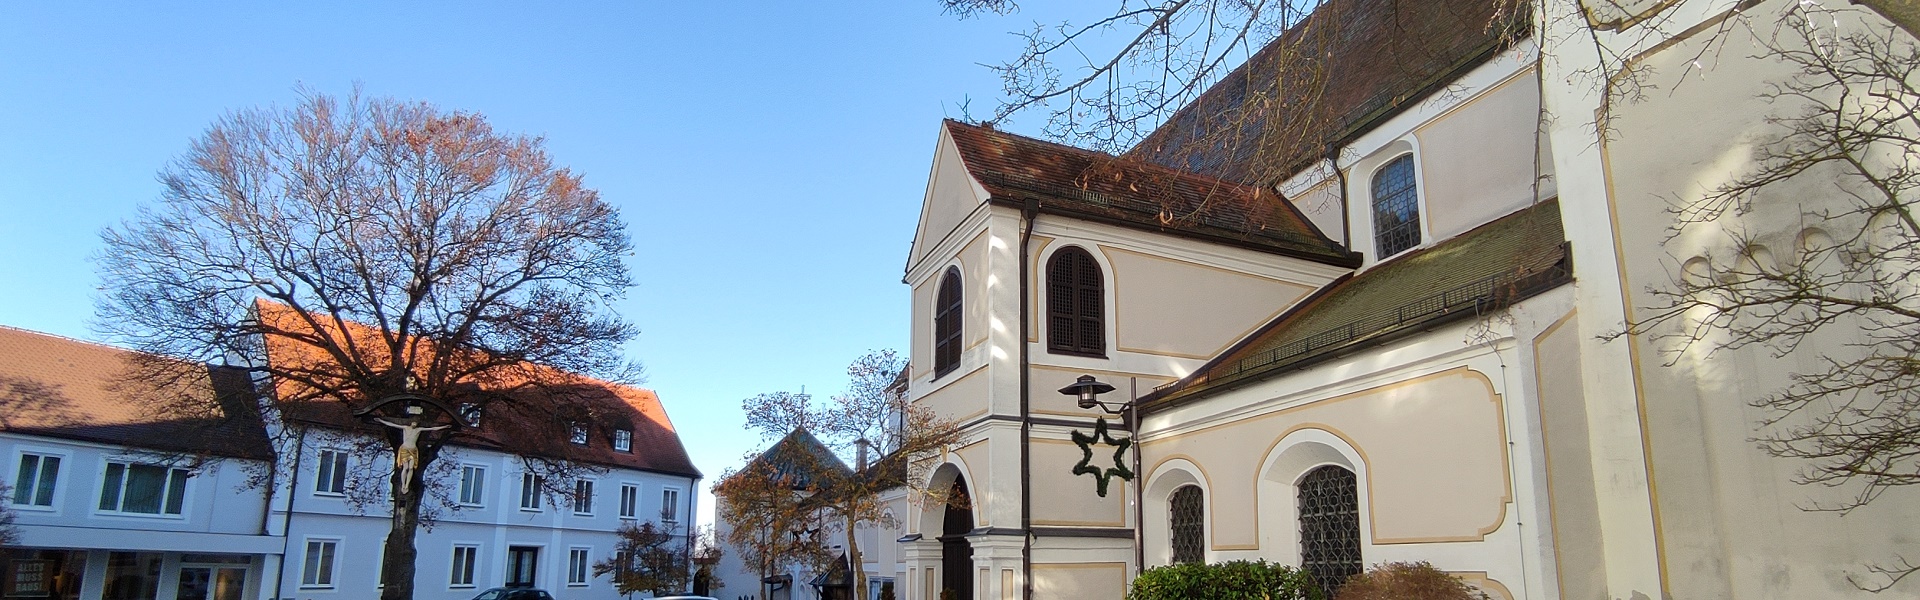 Header - Herbst Kirche und Weiß